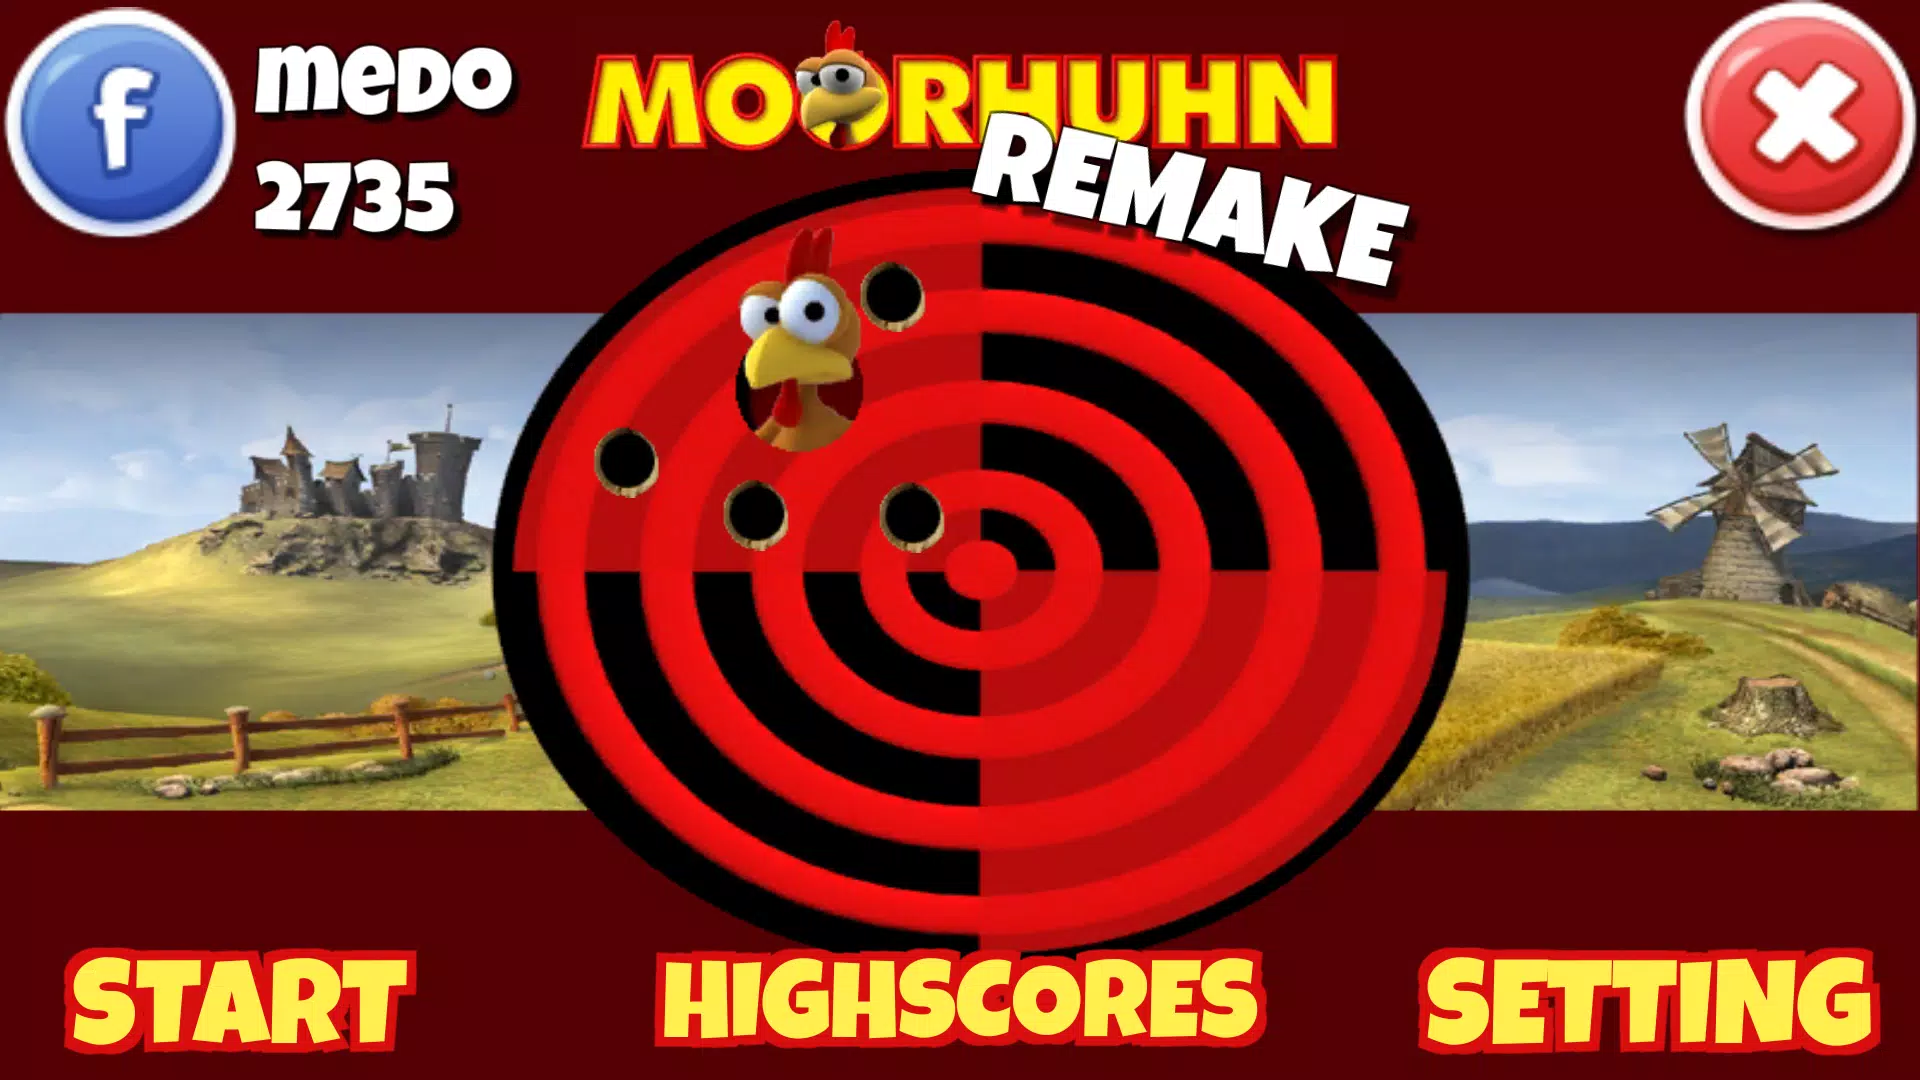 Moorhuhn Remake, Aplicações de download da Nintendo Switch, Jogos